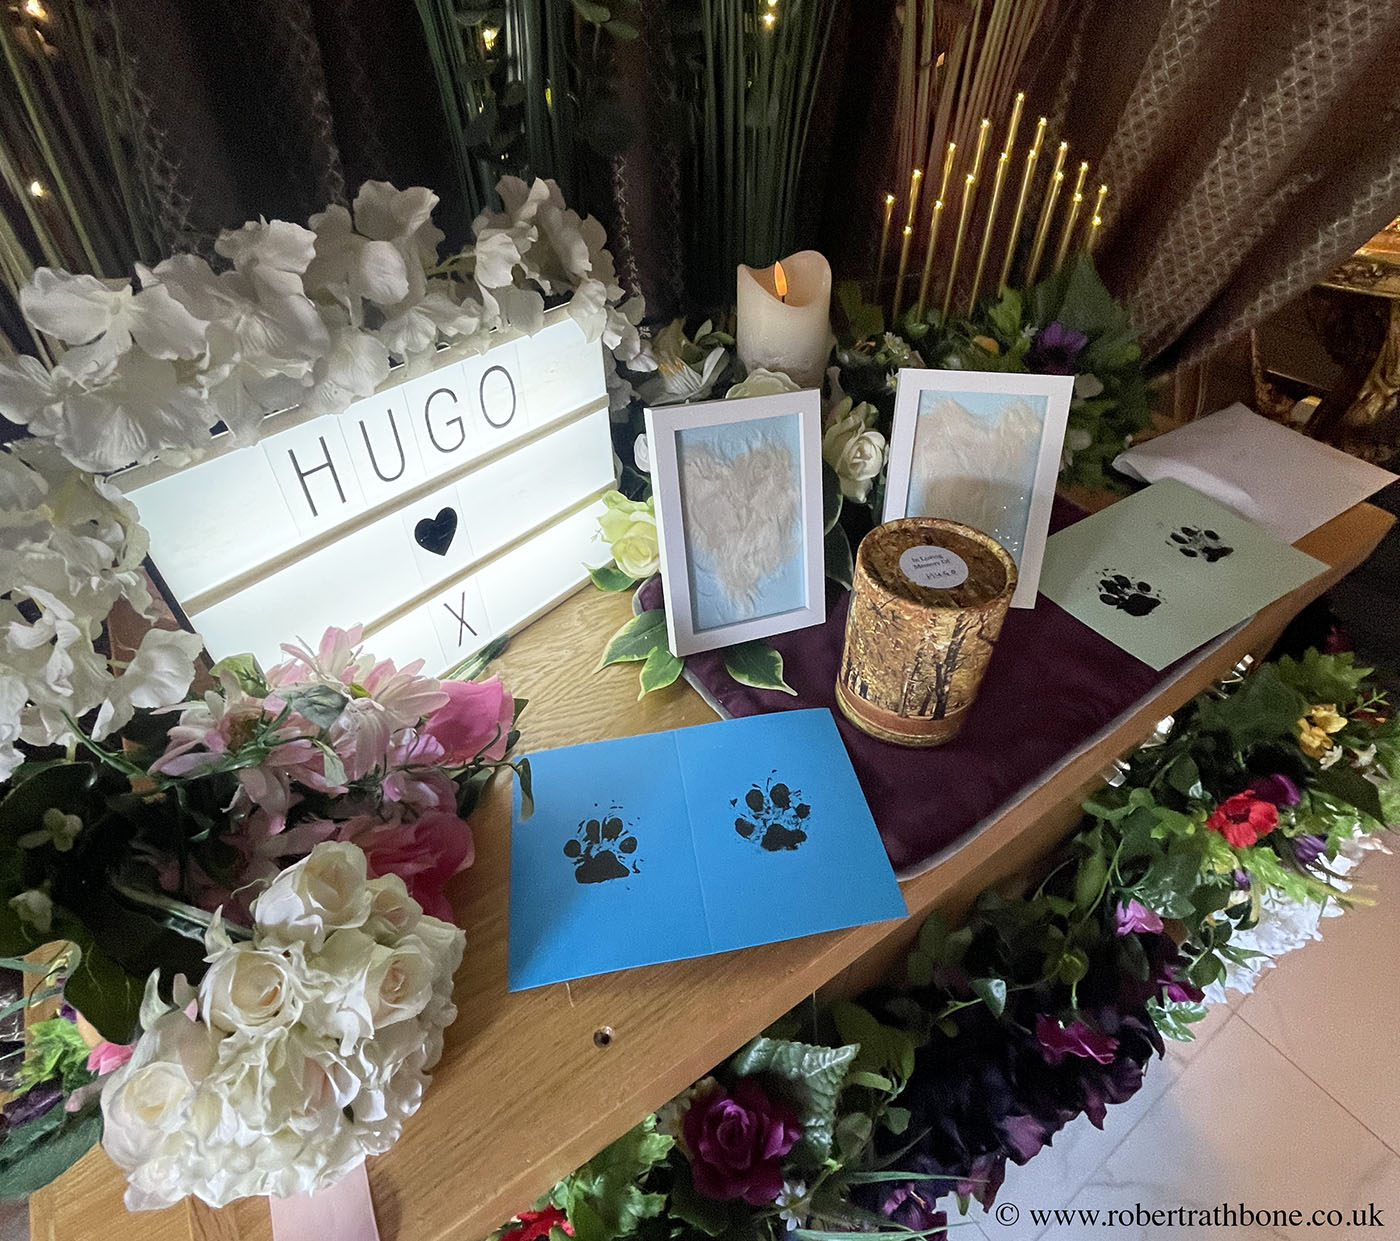 In memory of terrier Hugo